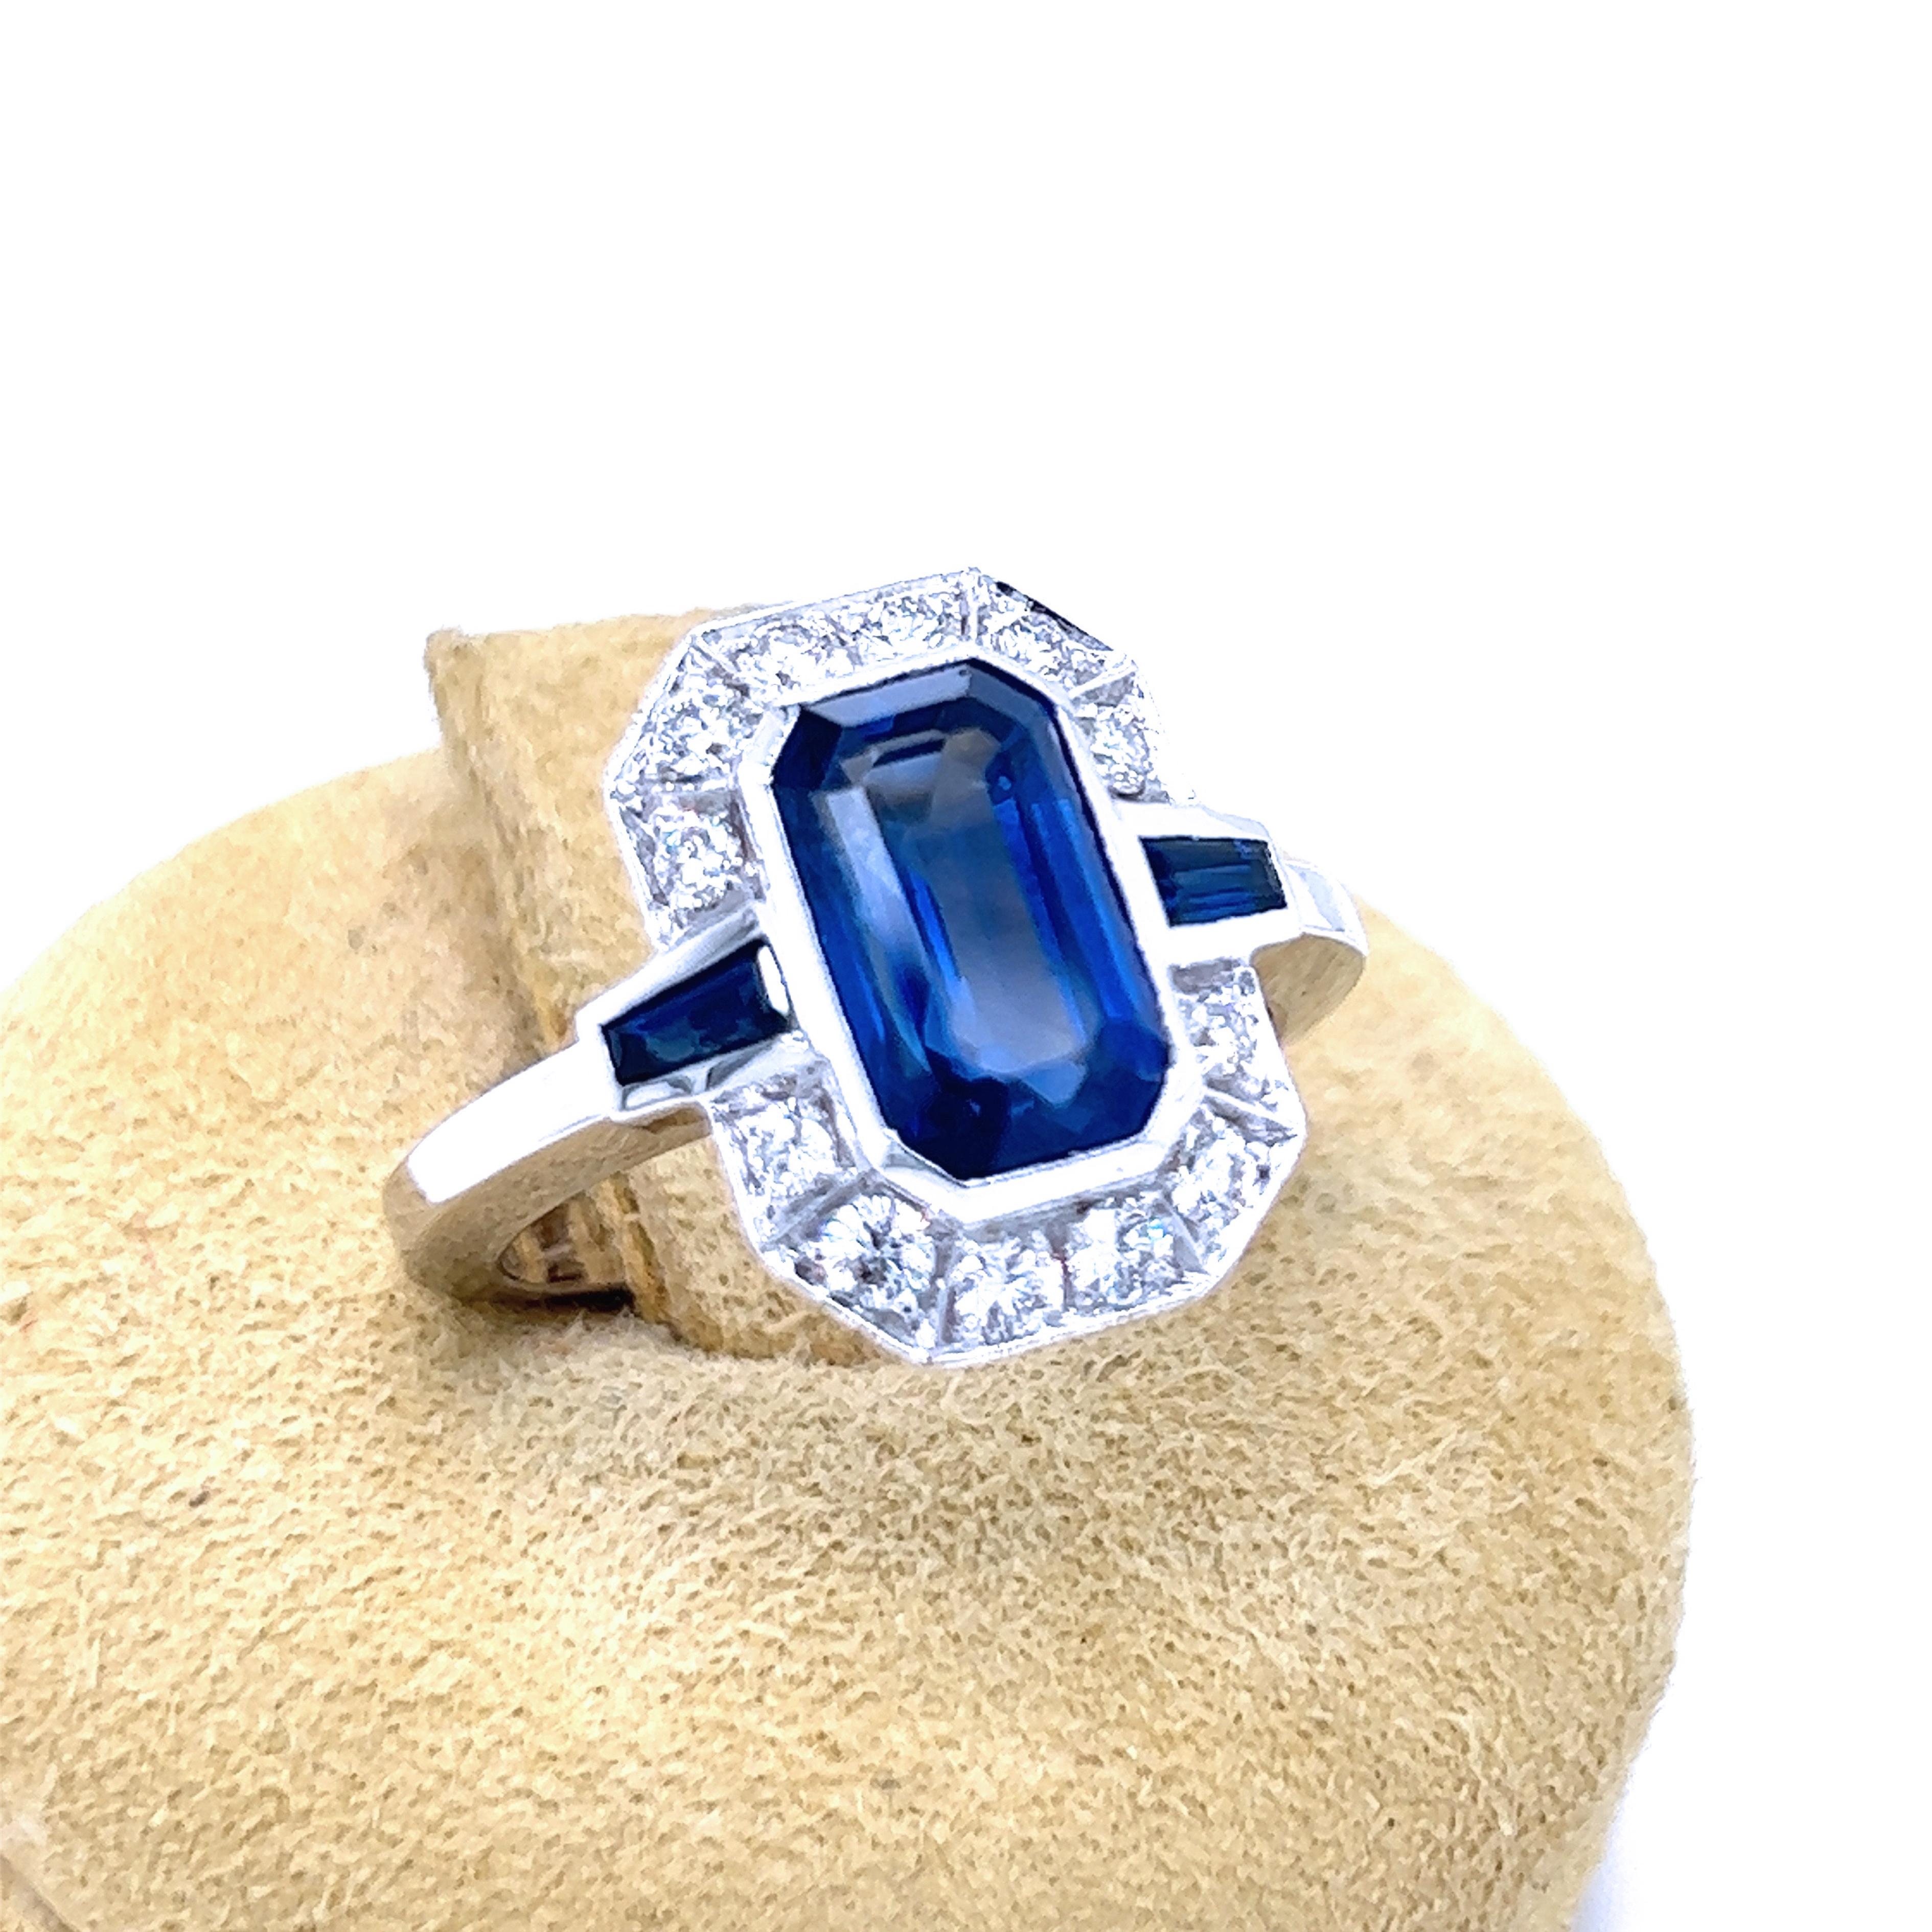 Awesome, IGI zertifiziert, 3,17Kt (10,26x6,10x4,5mm) Royal Blue Sapphire Emerald Cut in einem Top-Qualität 0,43Kt White Diamond Brilliant Cut, 0,26Kt Sapphire Tapered Baguette zeitlose Weißgold Einstellung Ring.
Wie im IGI-Zertifikat 522236955 vom